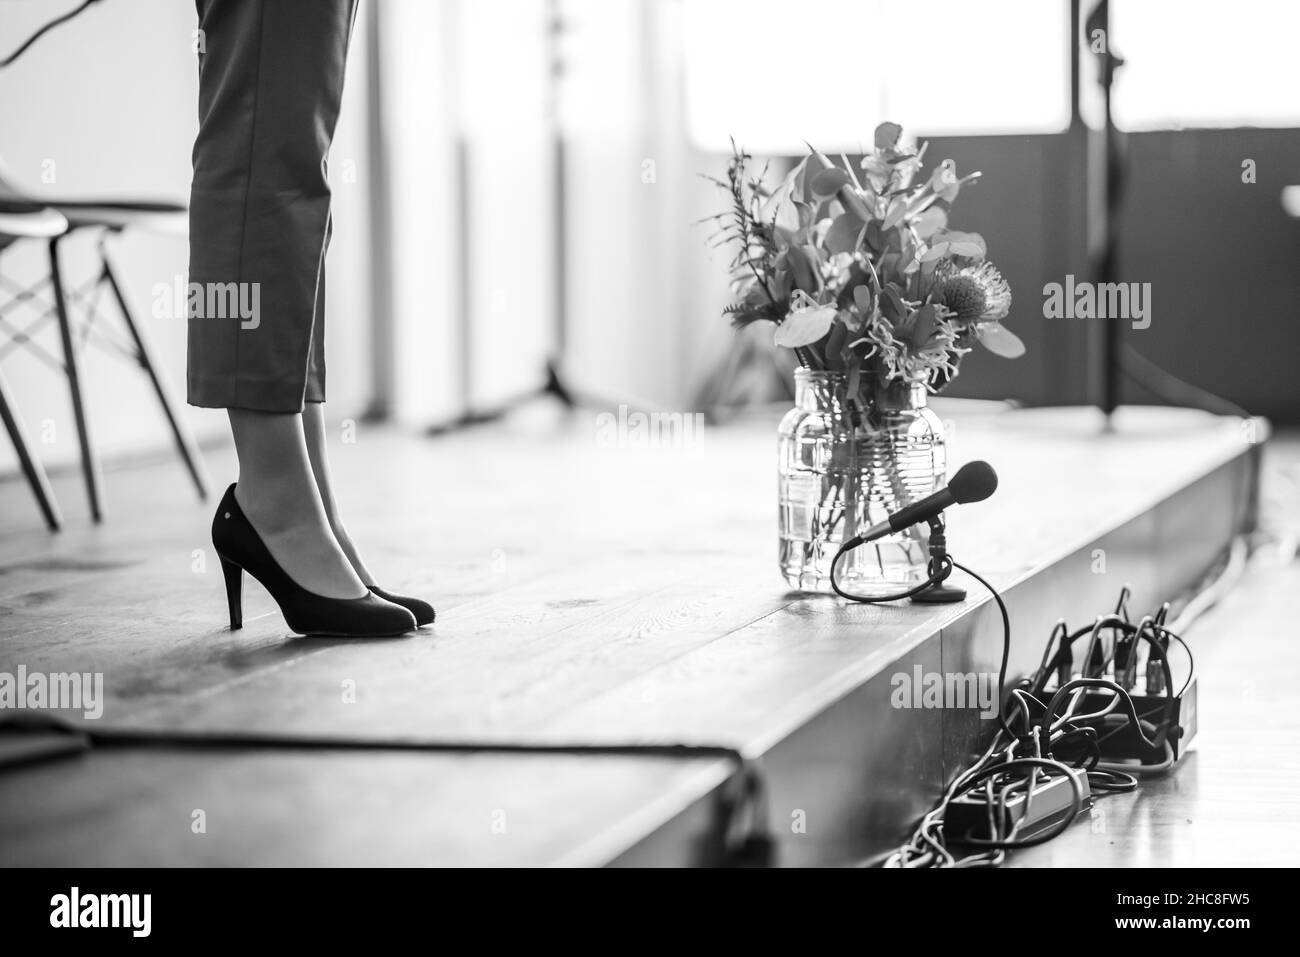 Immagine in scala di grigi delle gambe di una donna visibile su un palco accanto all'attrezzatura musicale e a un vaso di fiori vetrificati Foto Stock